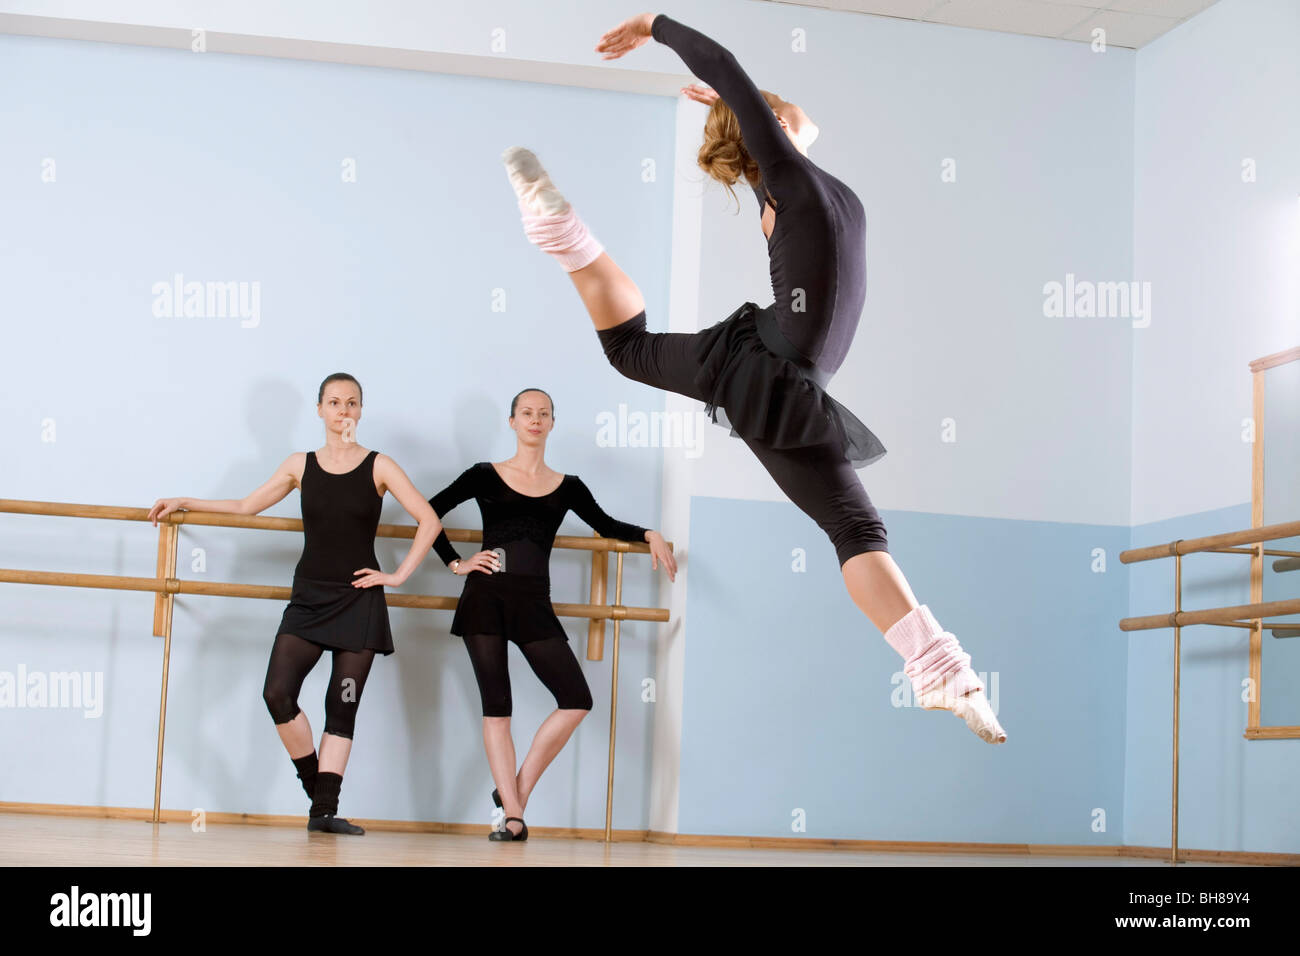 Sprung durch die Luft wie zwei weitere Frauen schauen auf ballerina Stockfoto